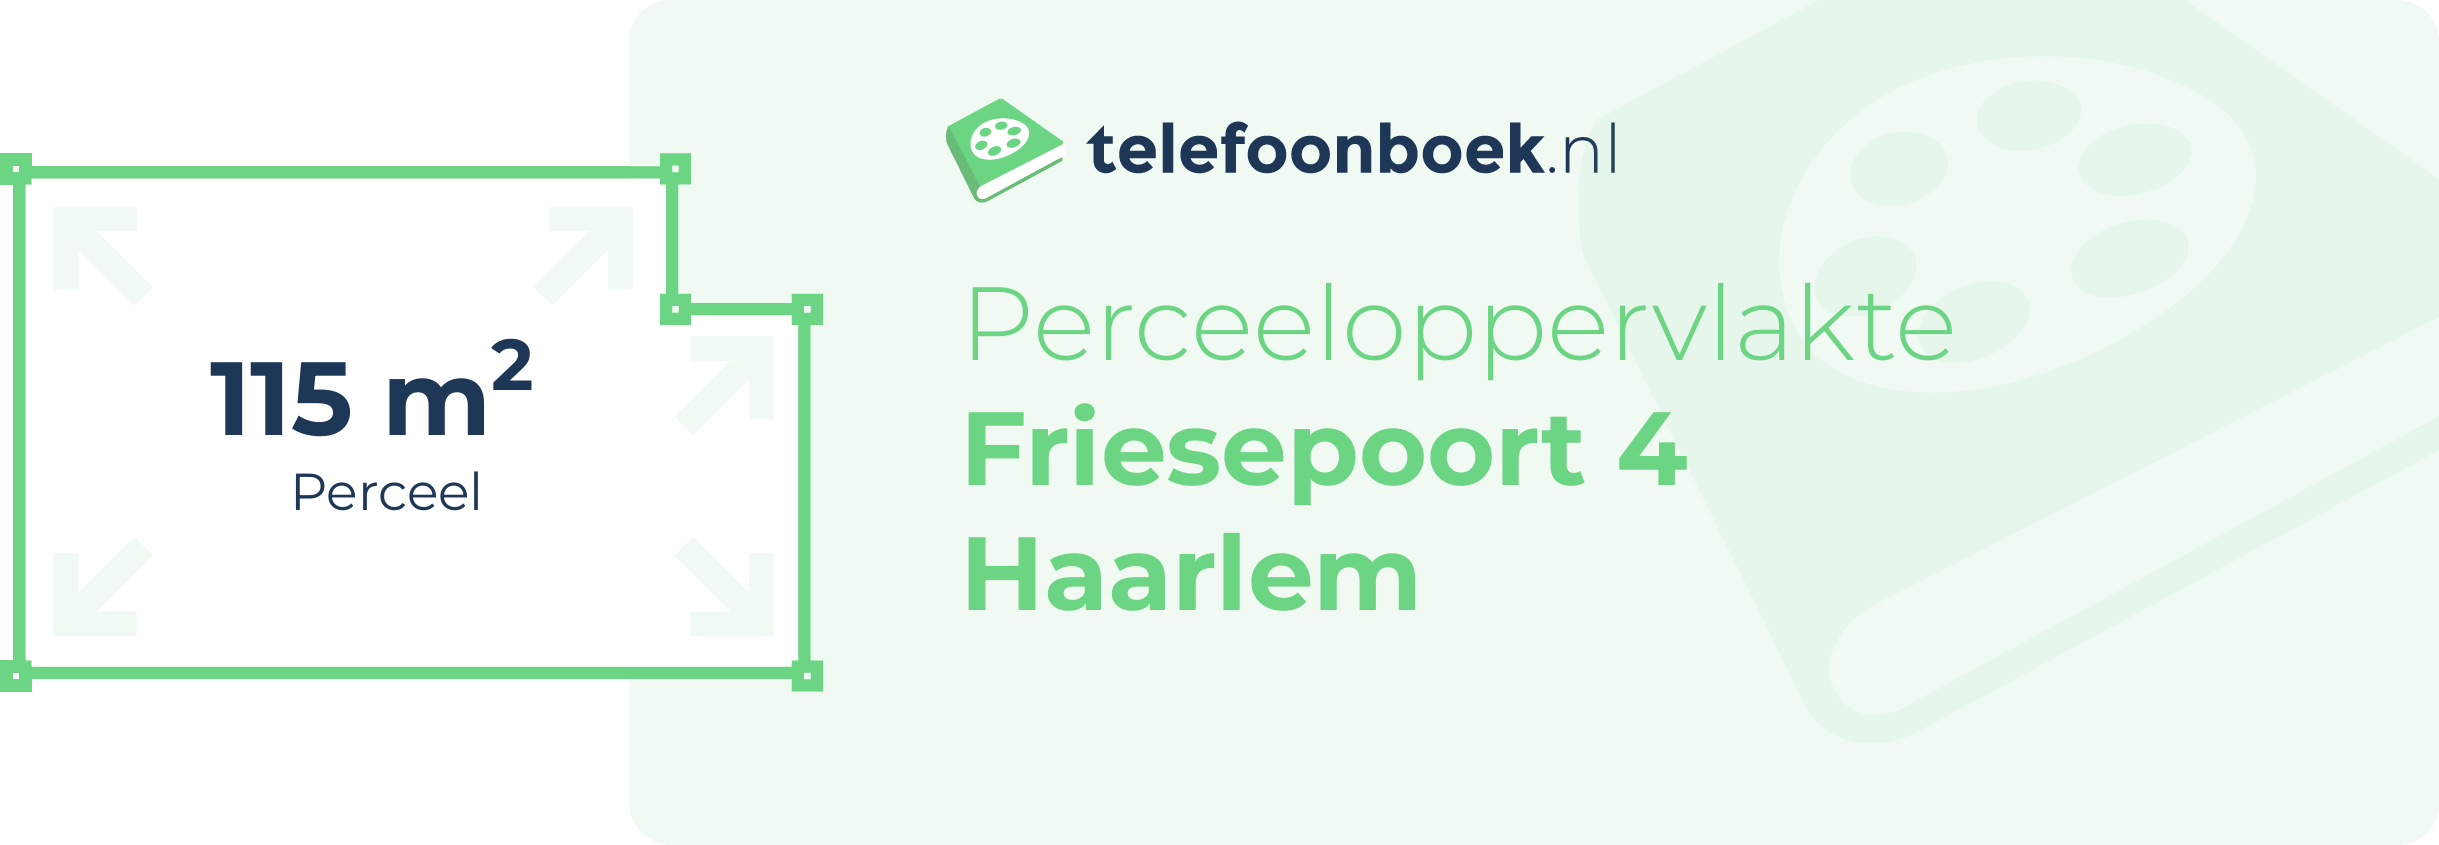 Perceeloppervlakte Friesepoort 4 Haarlem